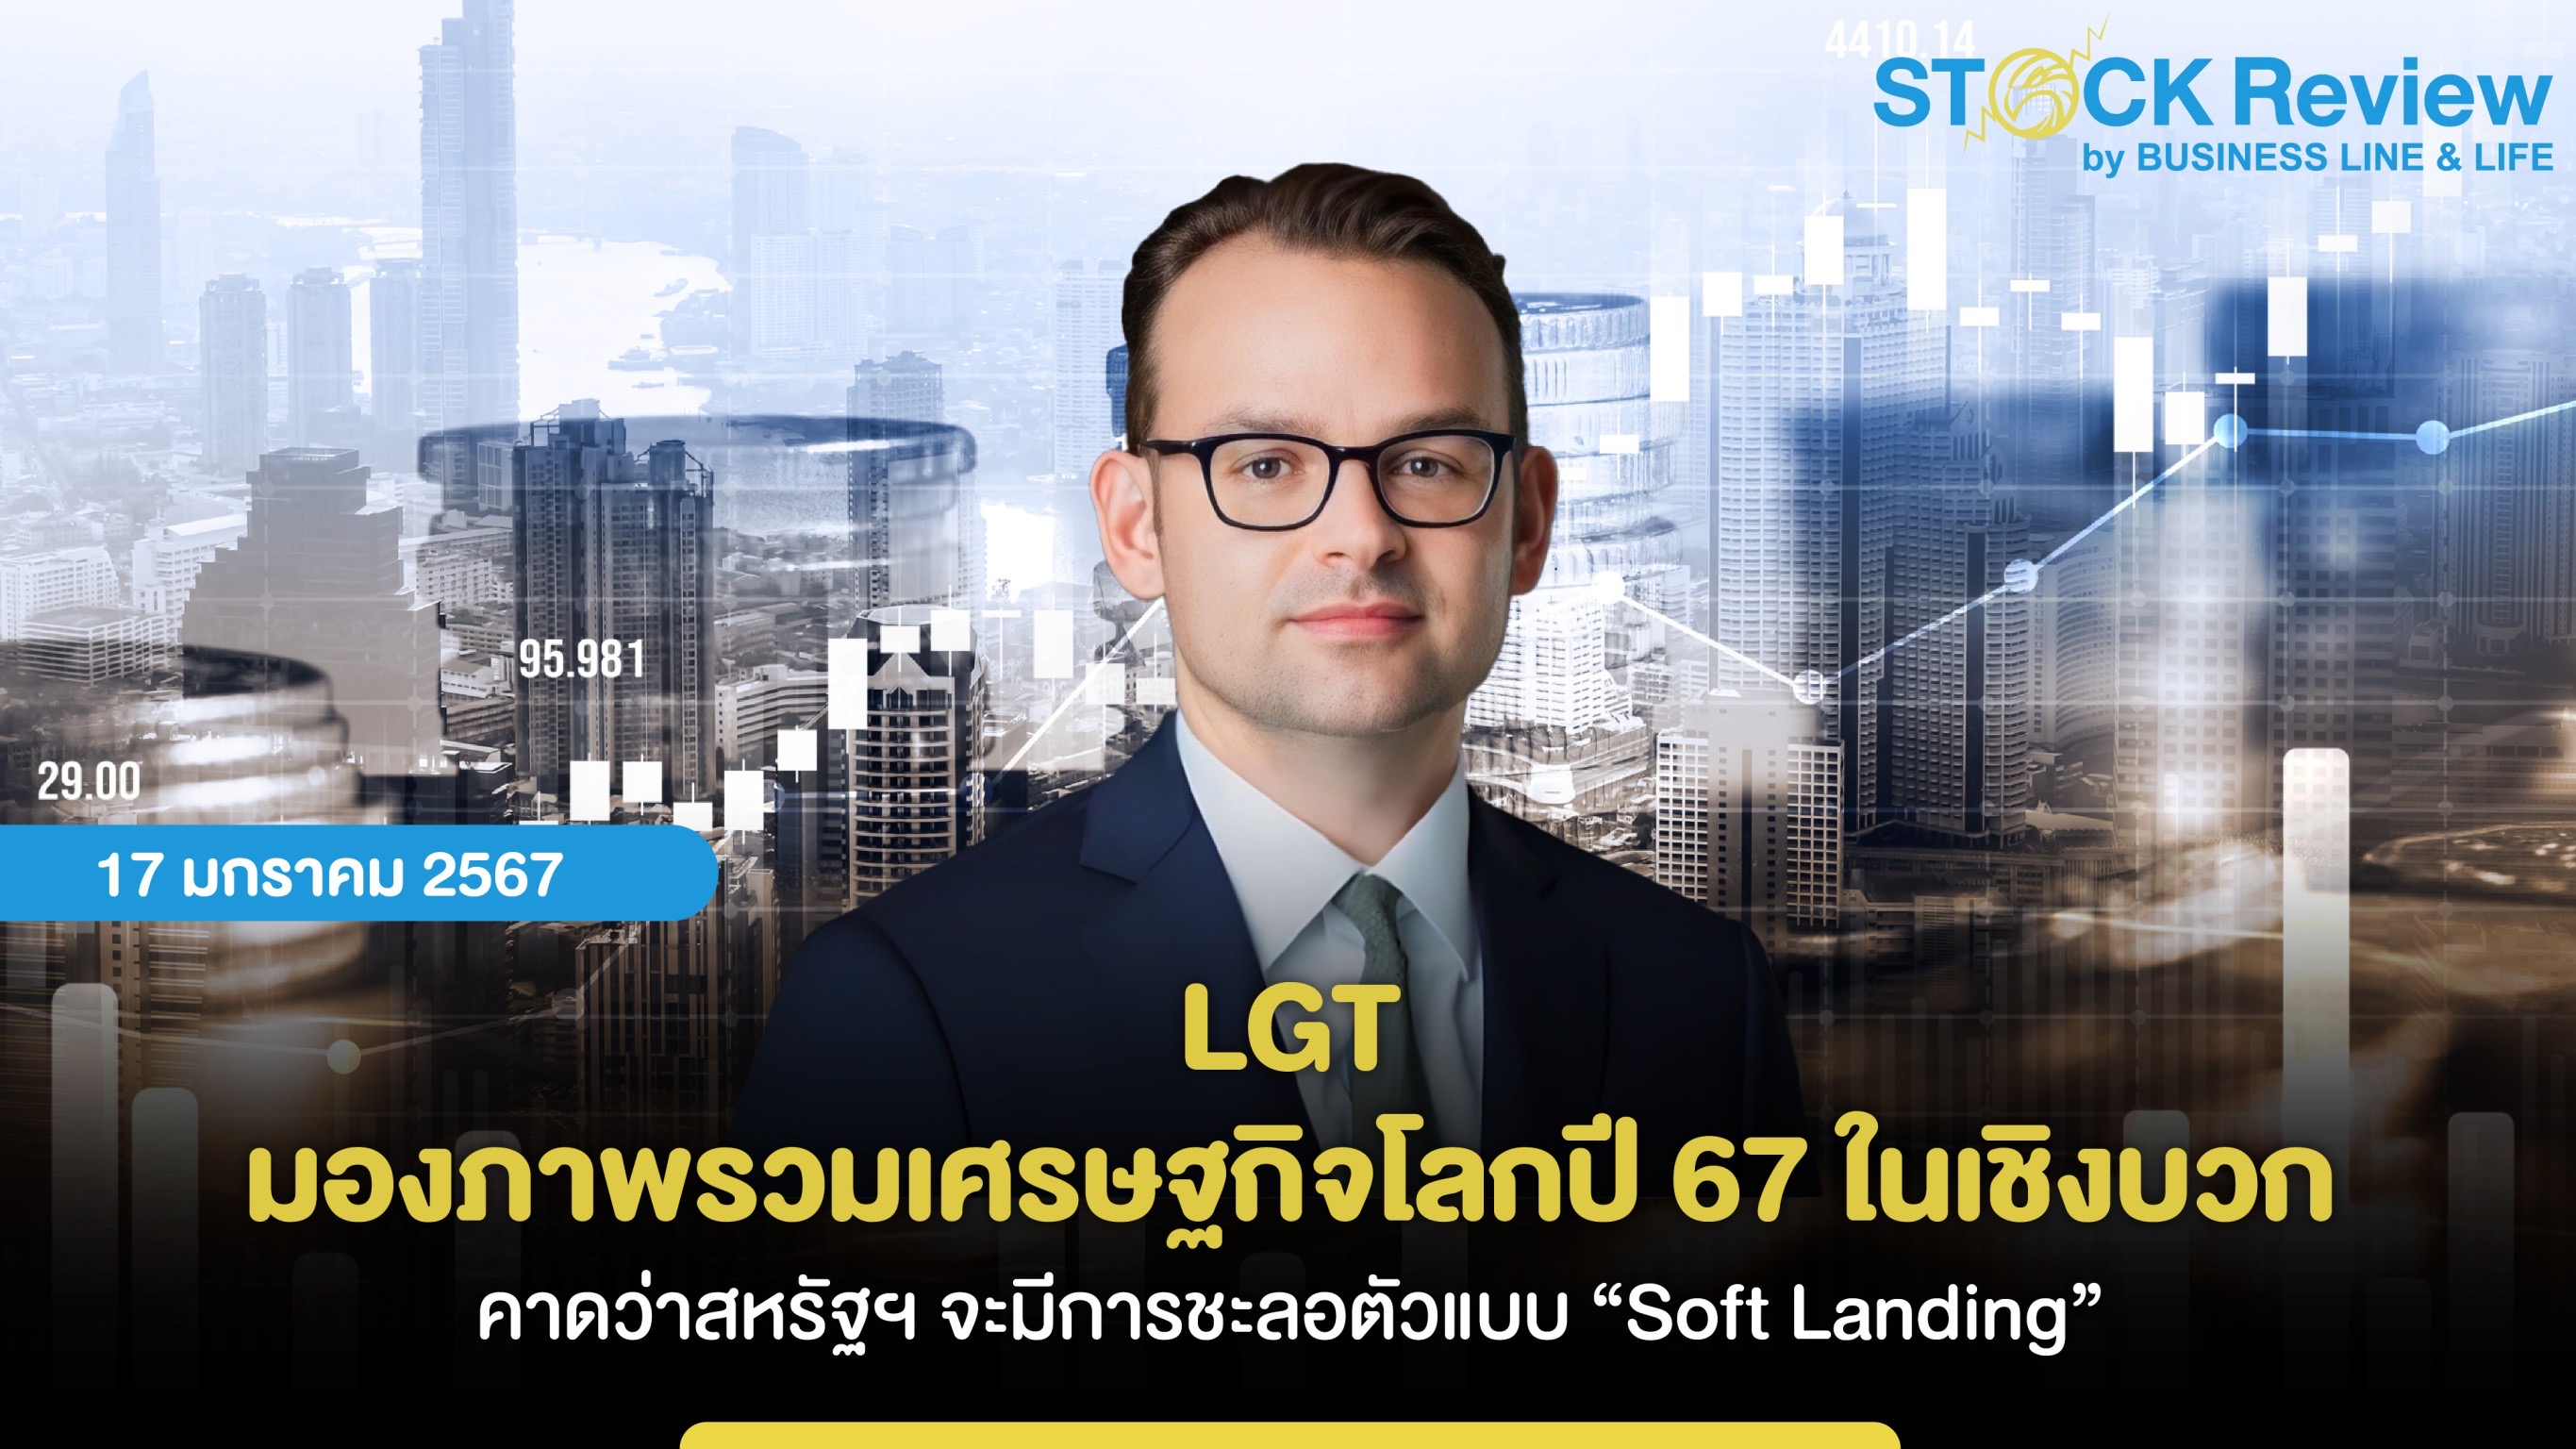 LGT มองภาพรวมเศรษฐกิจโลกปี 2567 ในเชิงบวก คาดว่าสหรัฐฯ จะมีการชะลอตัวแบบ “Soft Landing”  พร้อมมองแนวโน้มในเชิงบวกต่อเศรษฐกิจในญี่ปุ่น อินเดีย ยุโรป และไทย